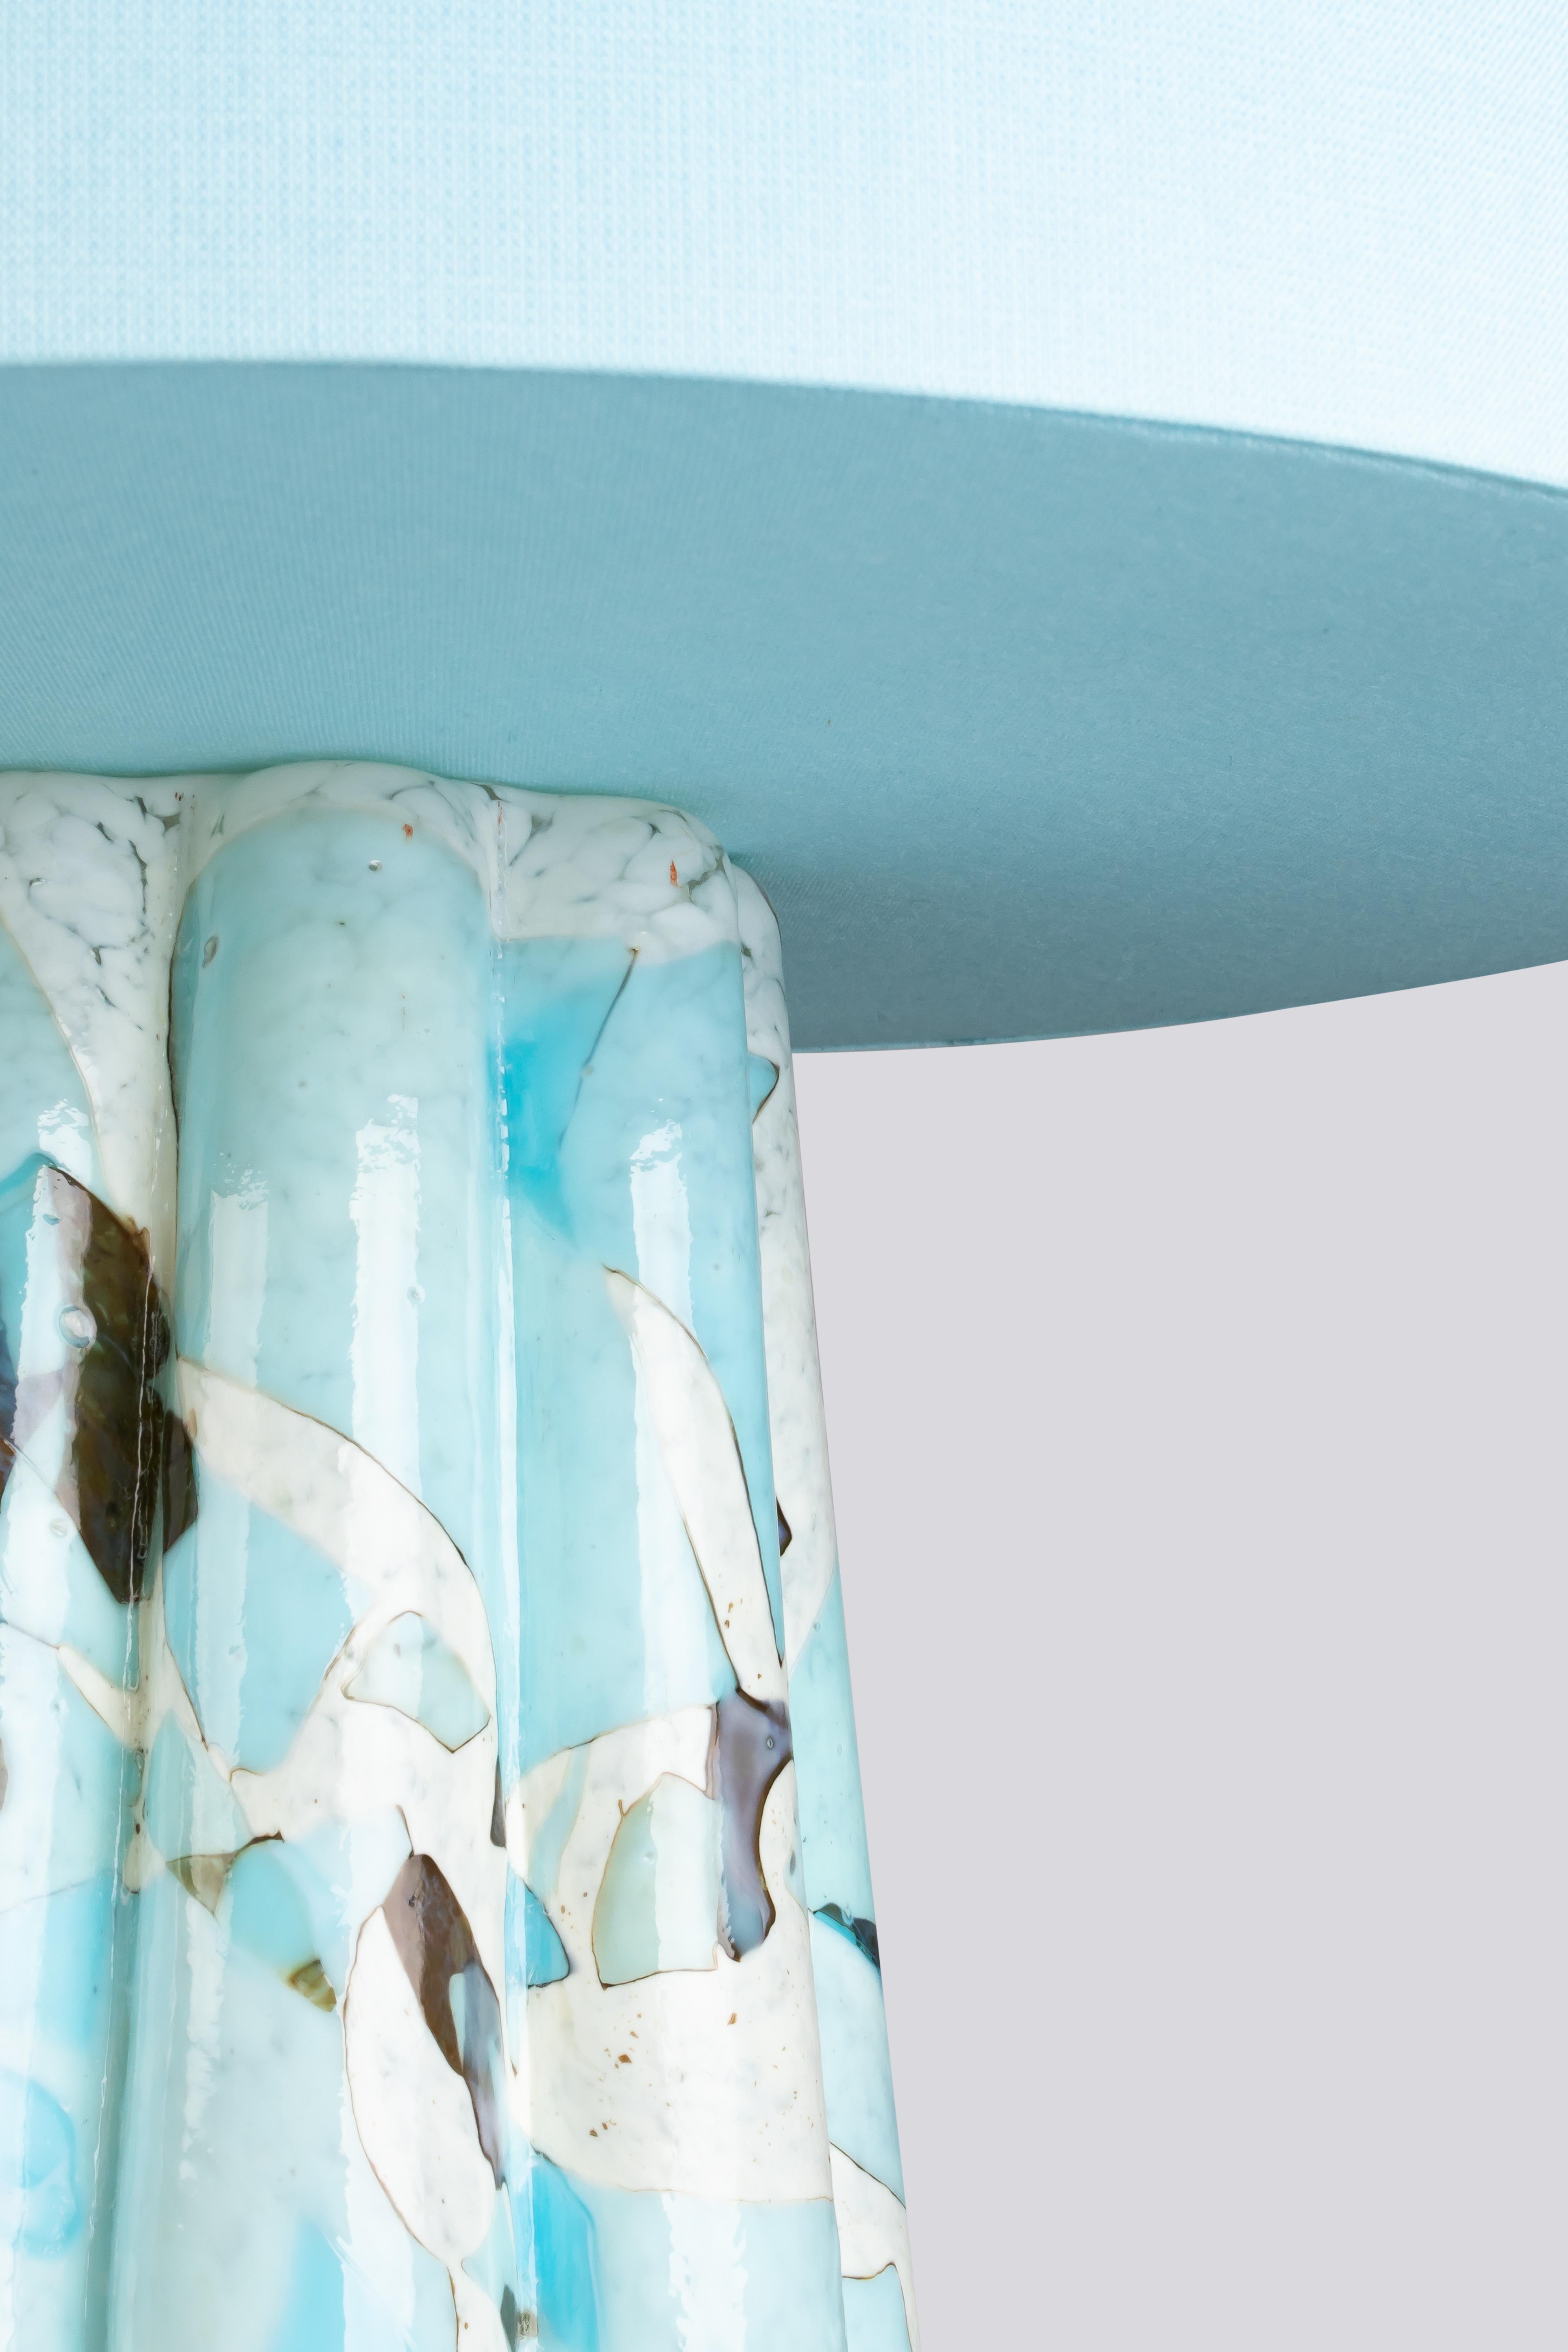 Nous vous présentons notre superbe lampe de table Bucket, véritable témoignage du savoir-faire artisanal. La base de la lampe, réalisée en verre soufflé de Murano selon notre célèbre technique du nougat, présente un captivant motif en forme de fleur